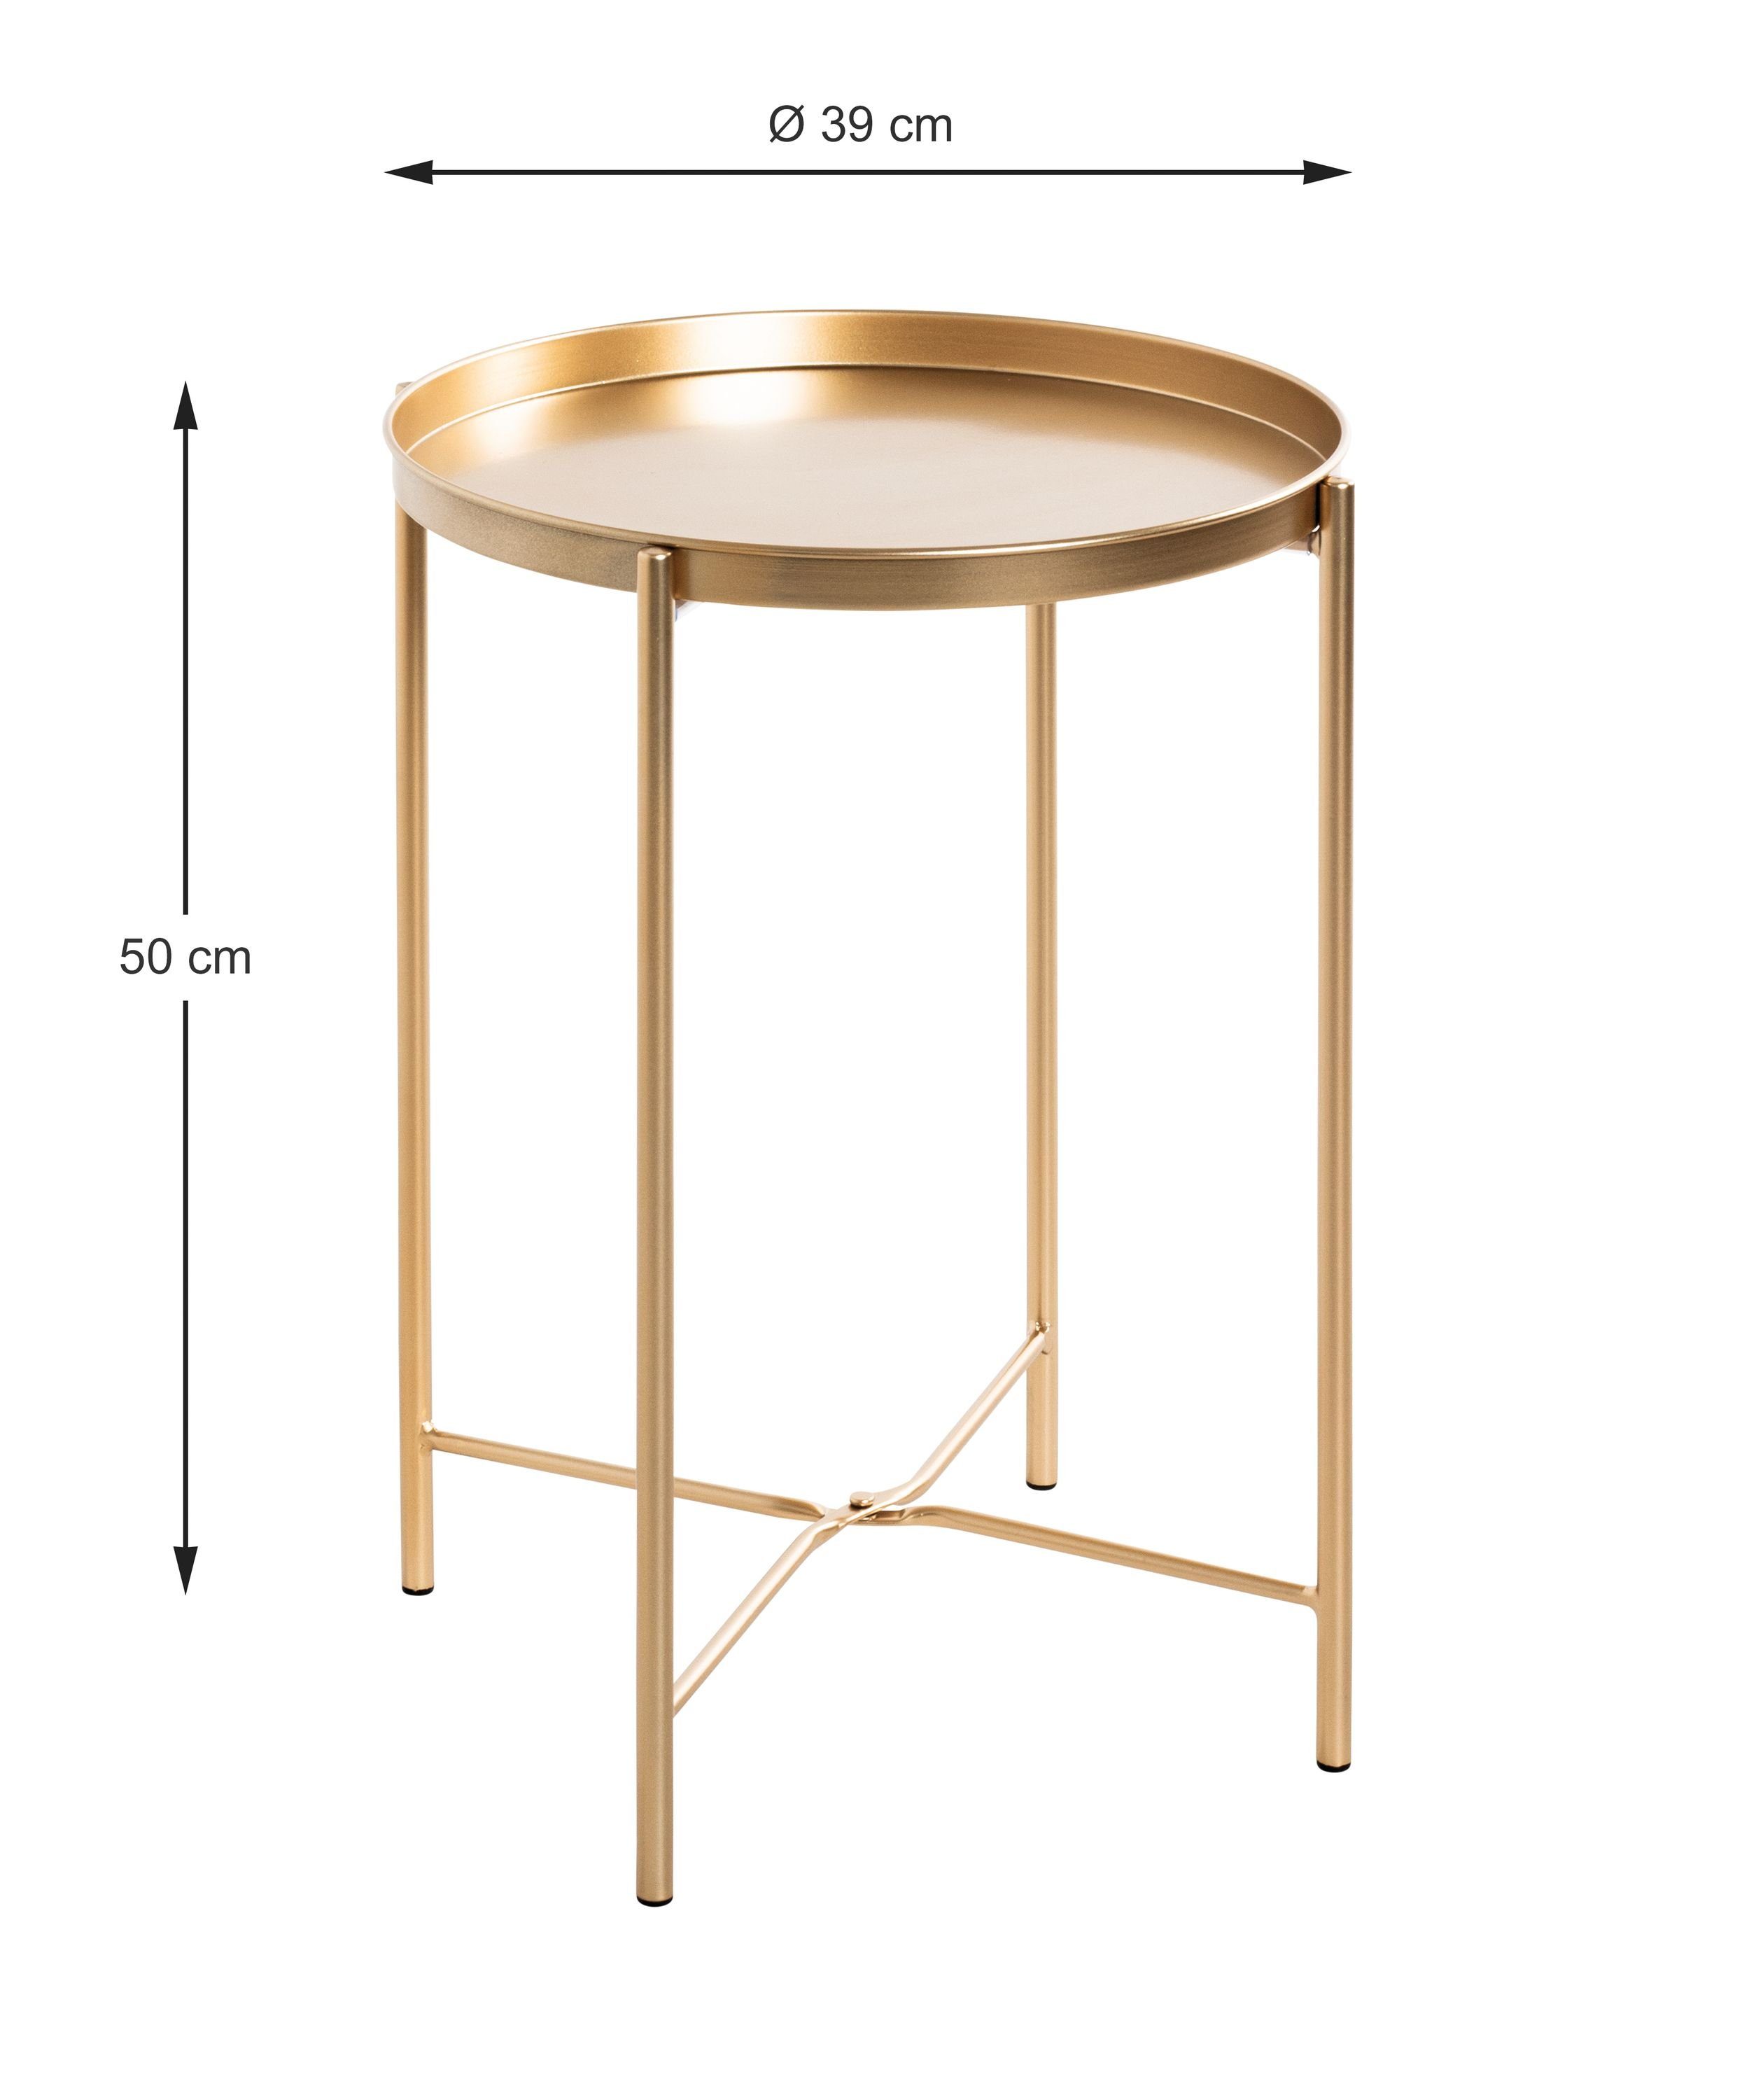 HAKU Beistelltisch Beistelltisch, HAKU Möbel Beistelltisch (DH 39x50 gold cm) Kaffeetisch cm DH 39x50